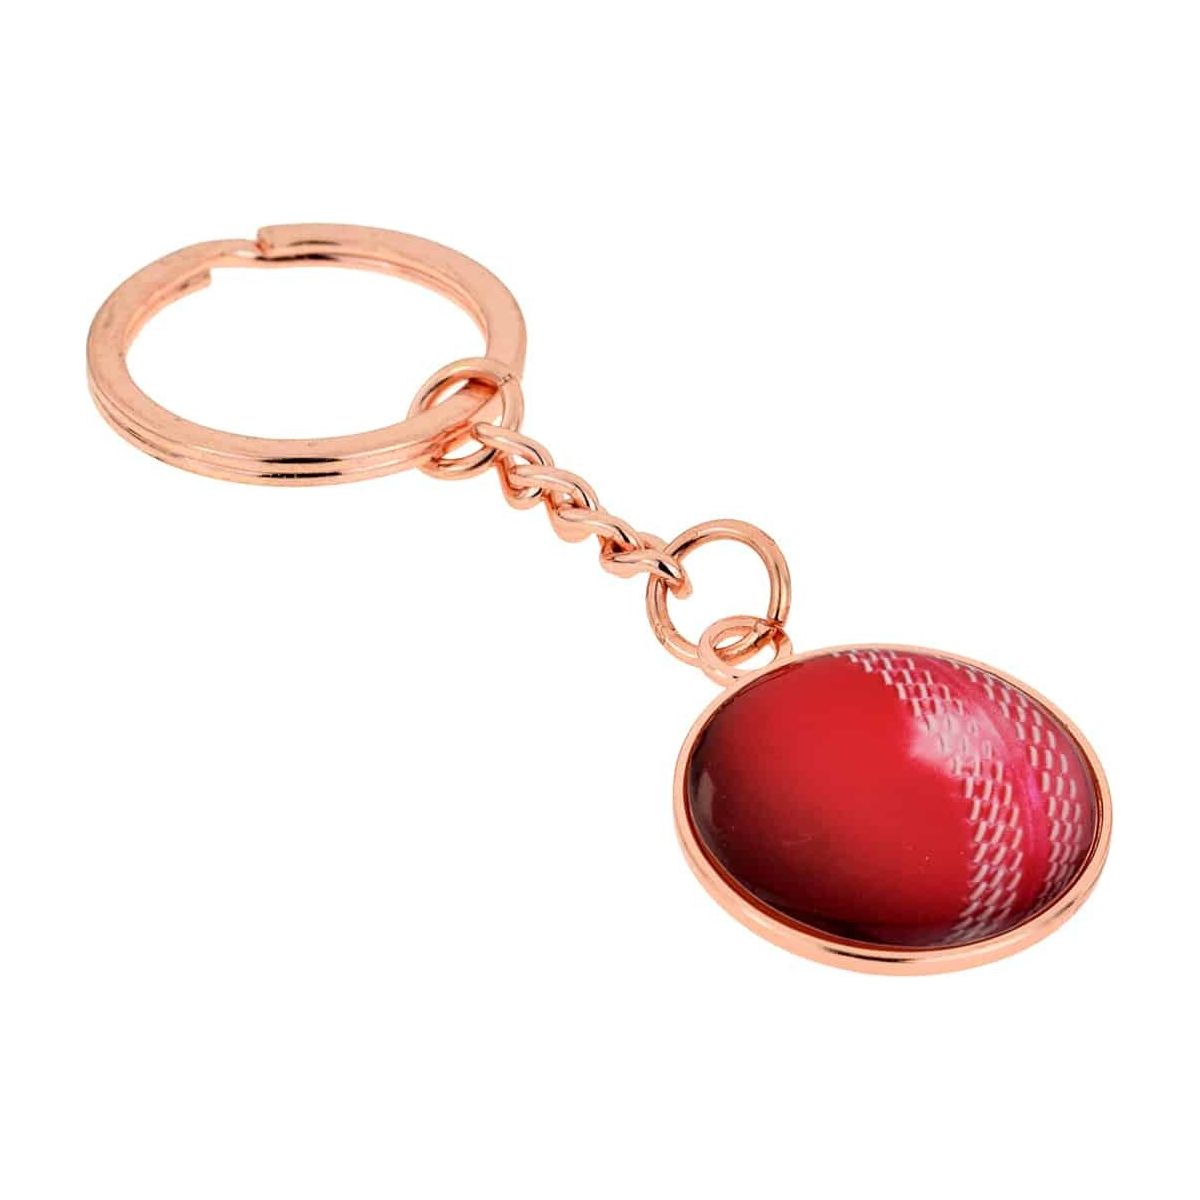 Cricket Ball Keyring - Ashton and Finch